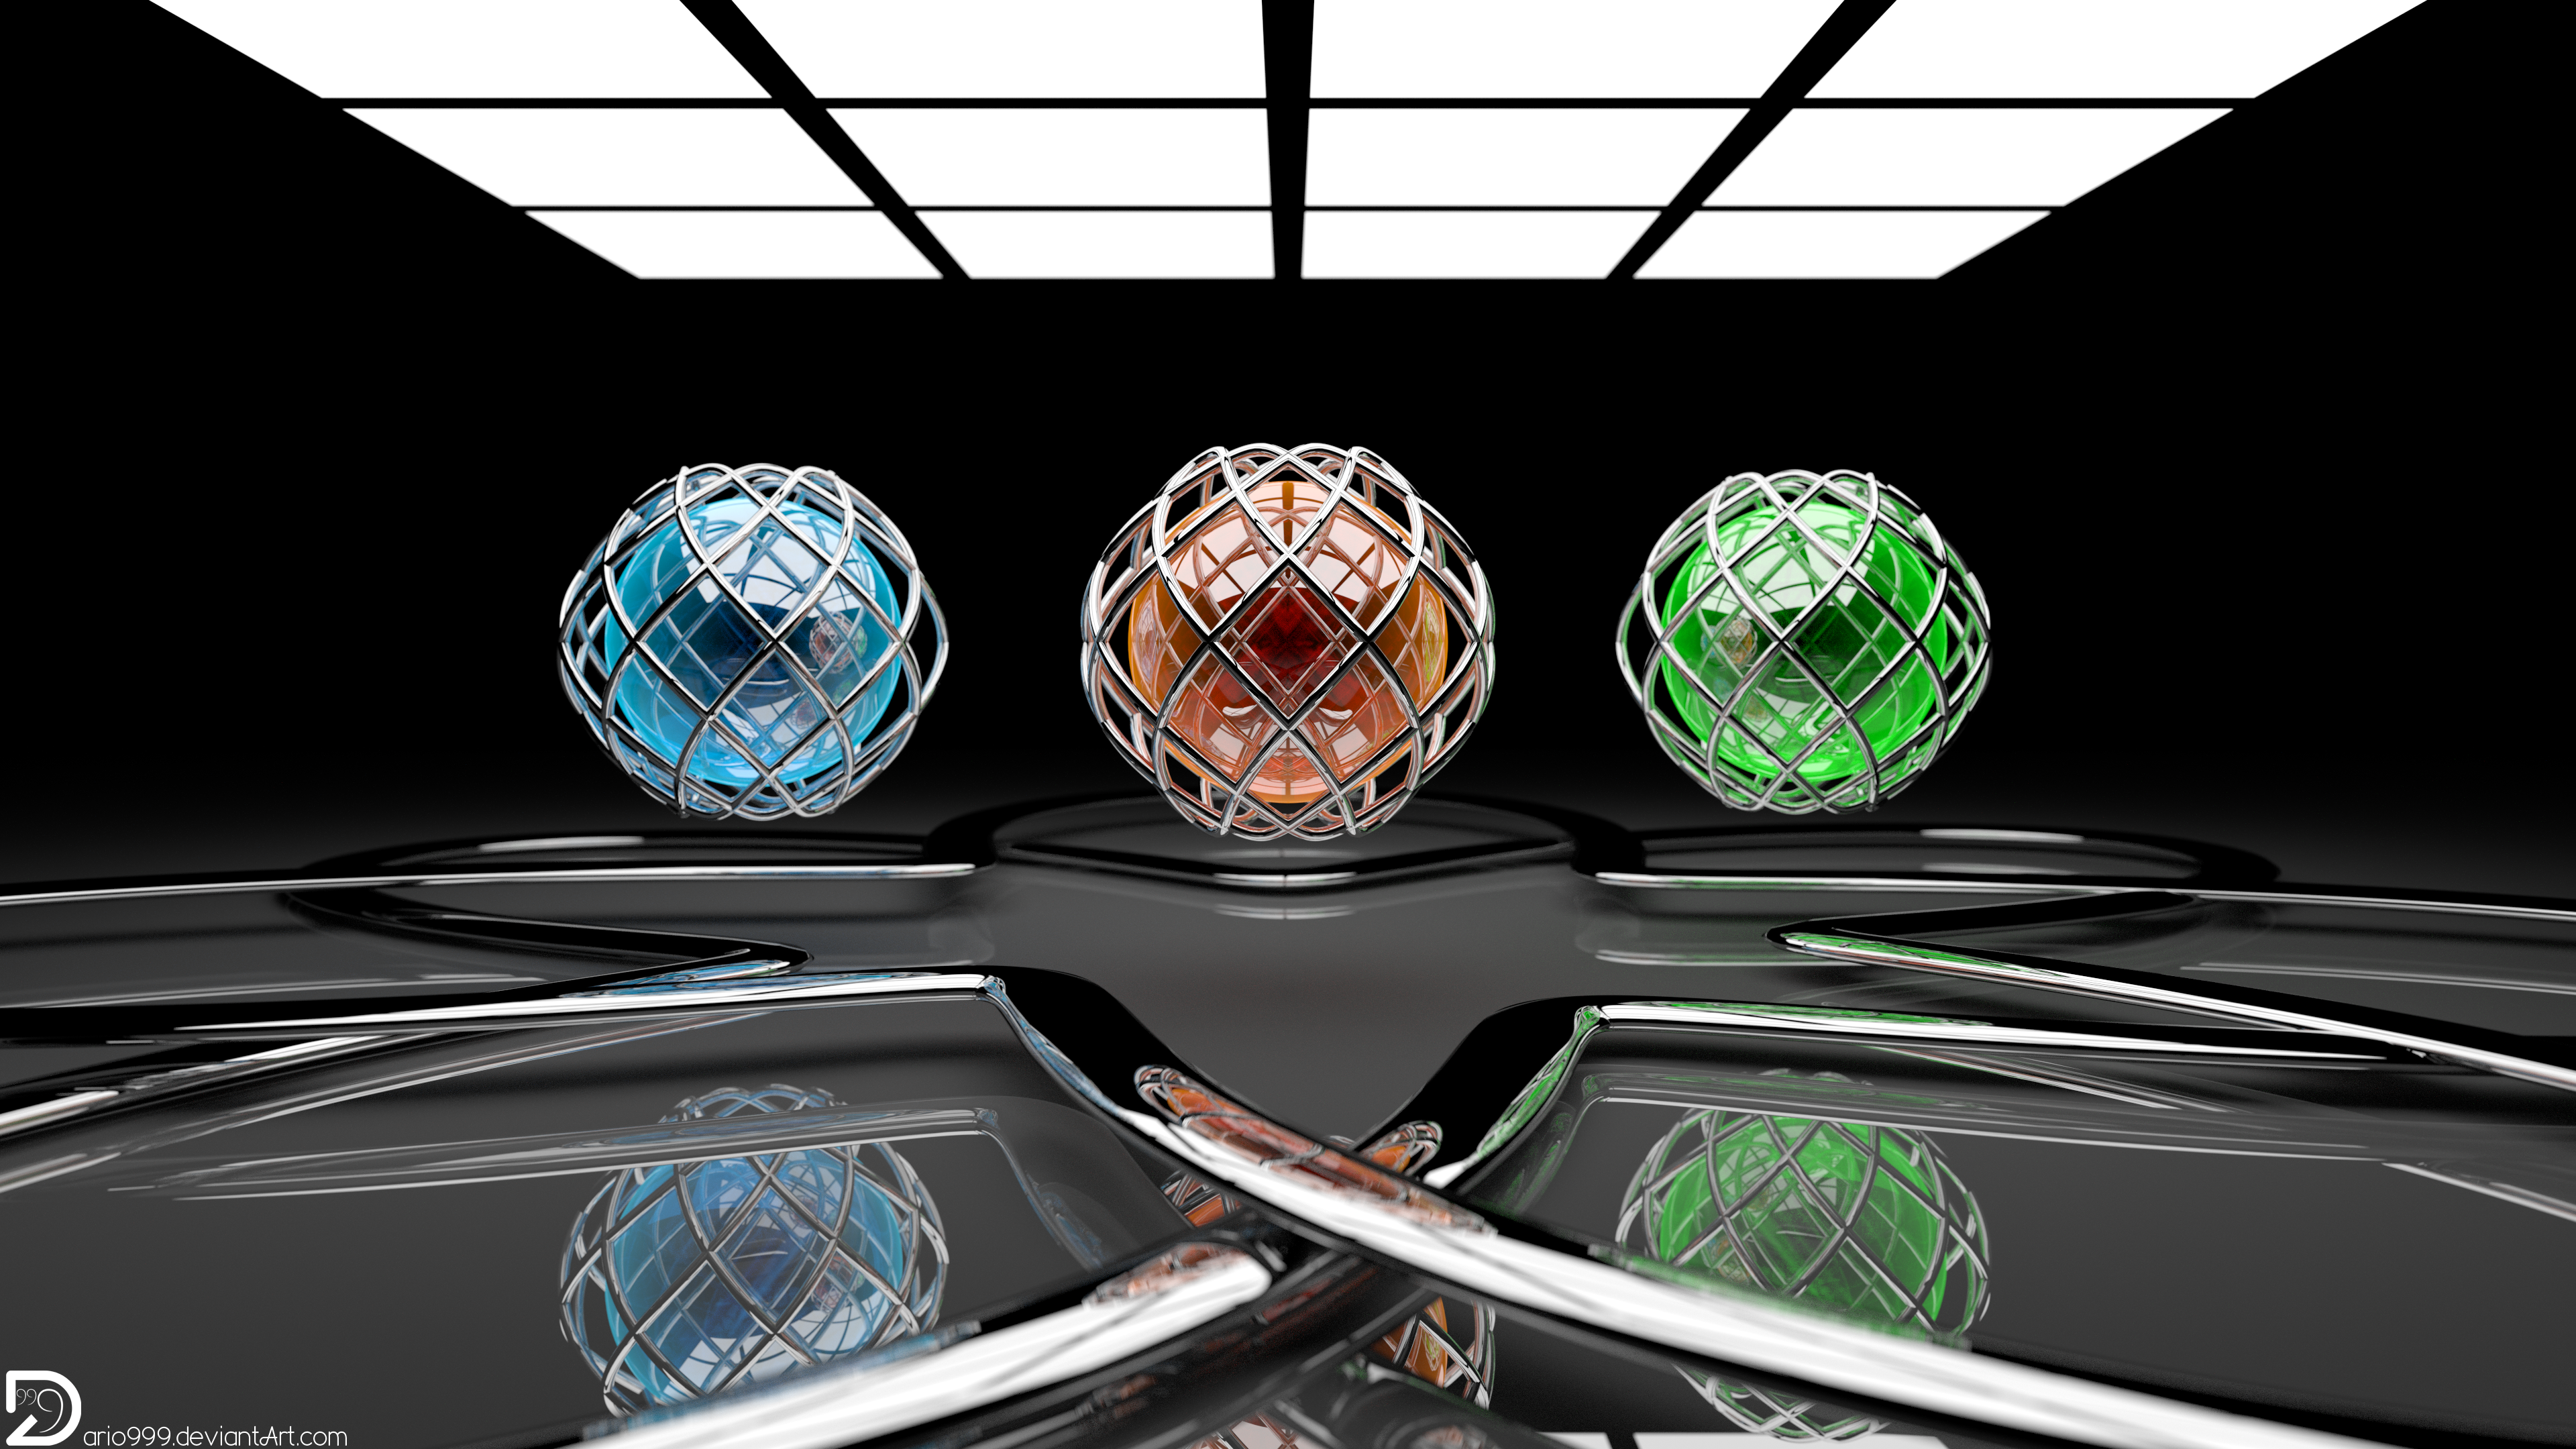 The Rhombus-Sphere (4k and Full HD)